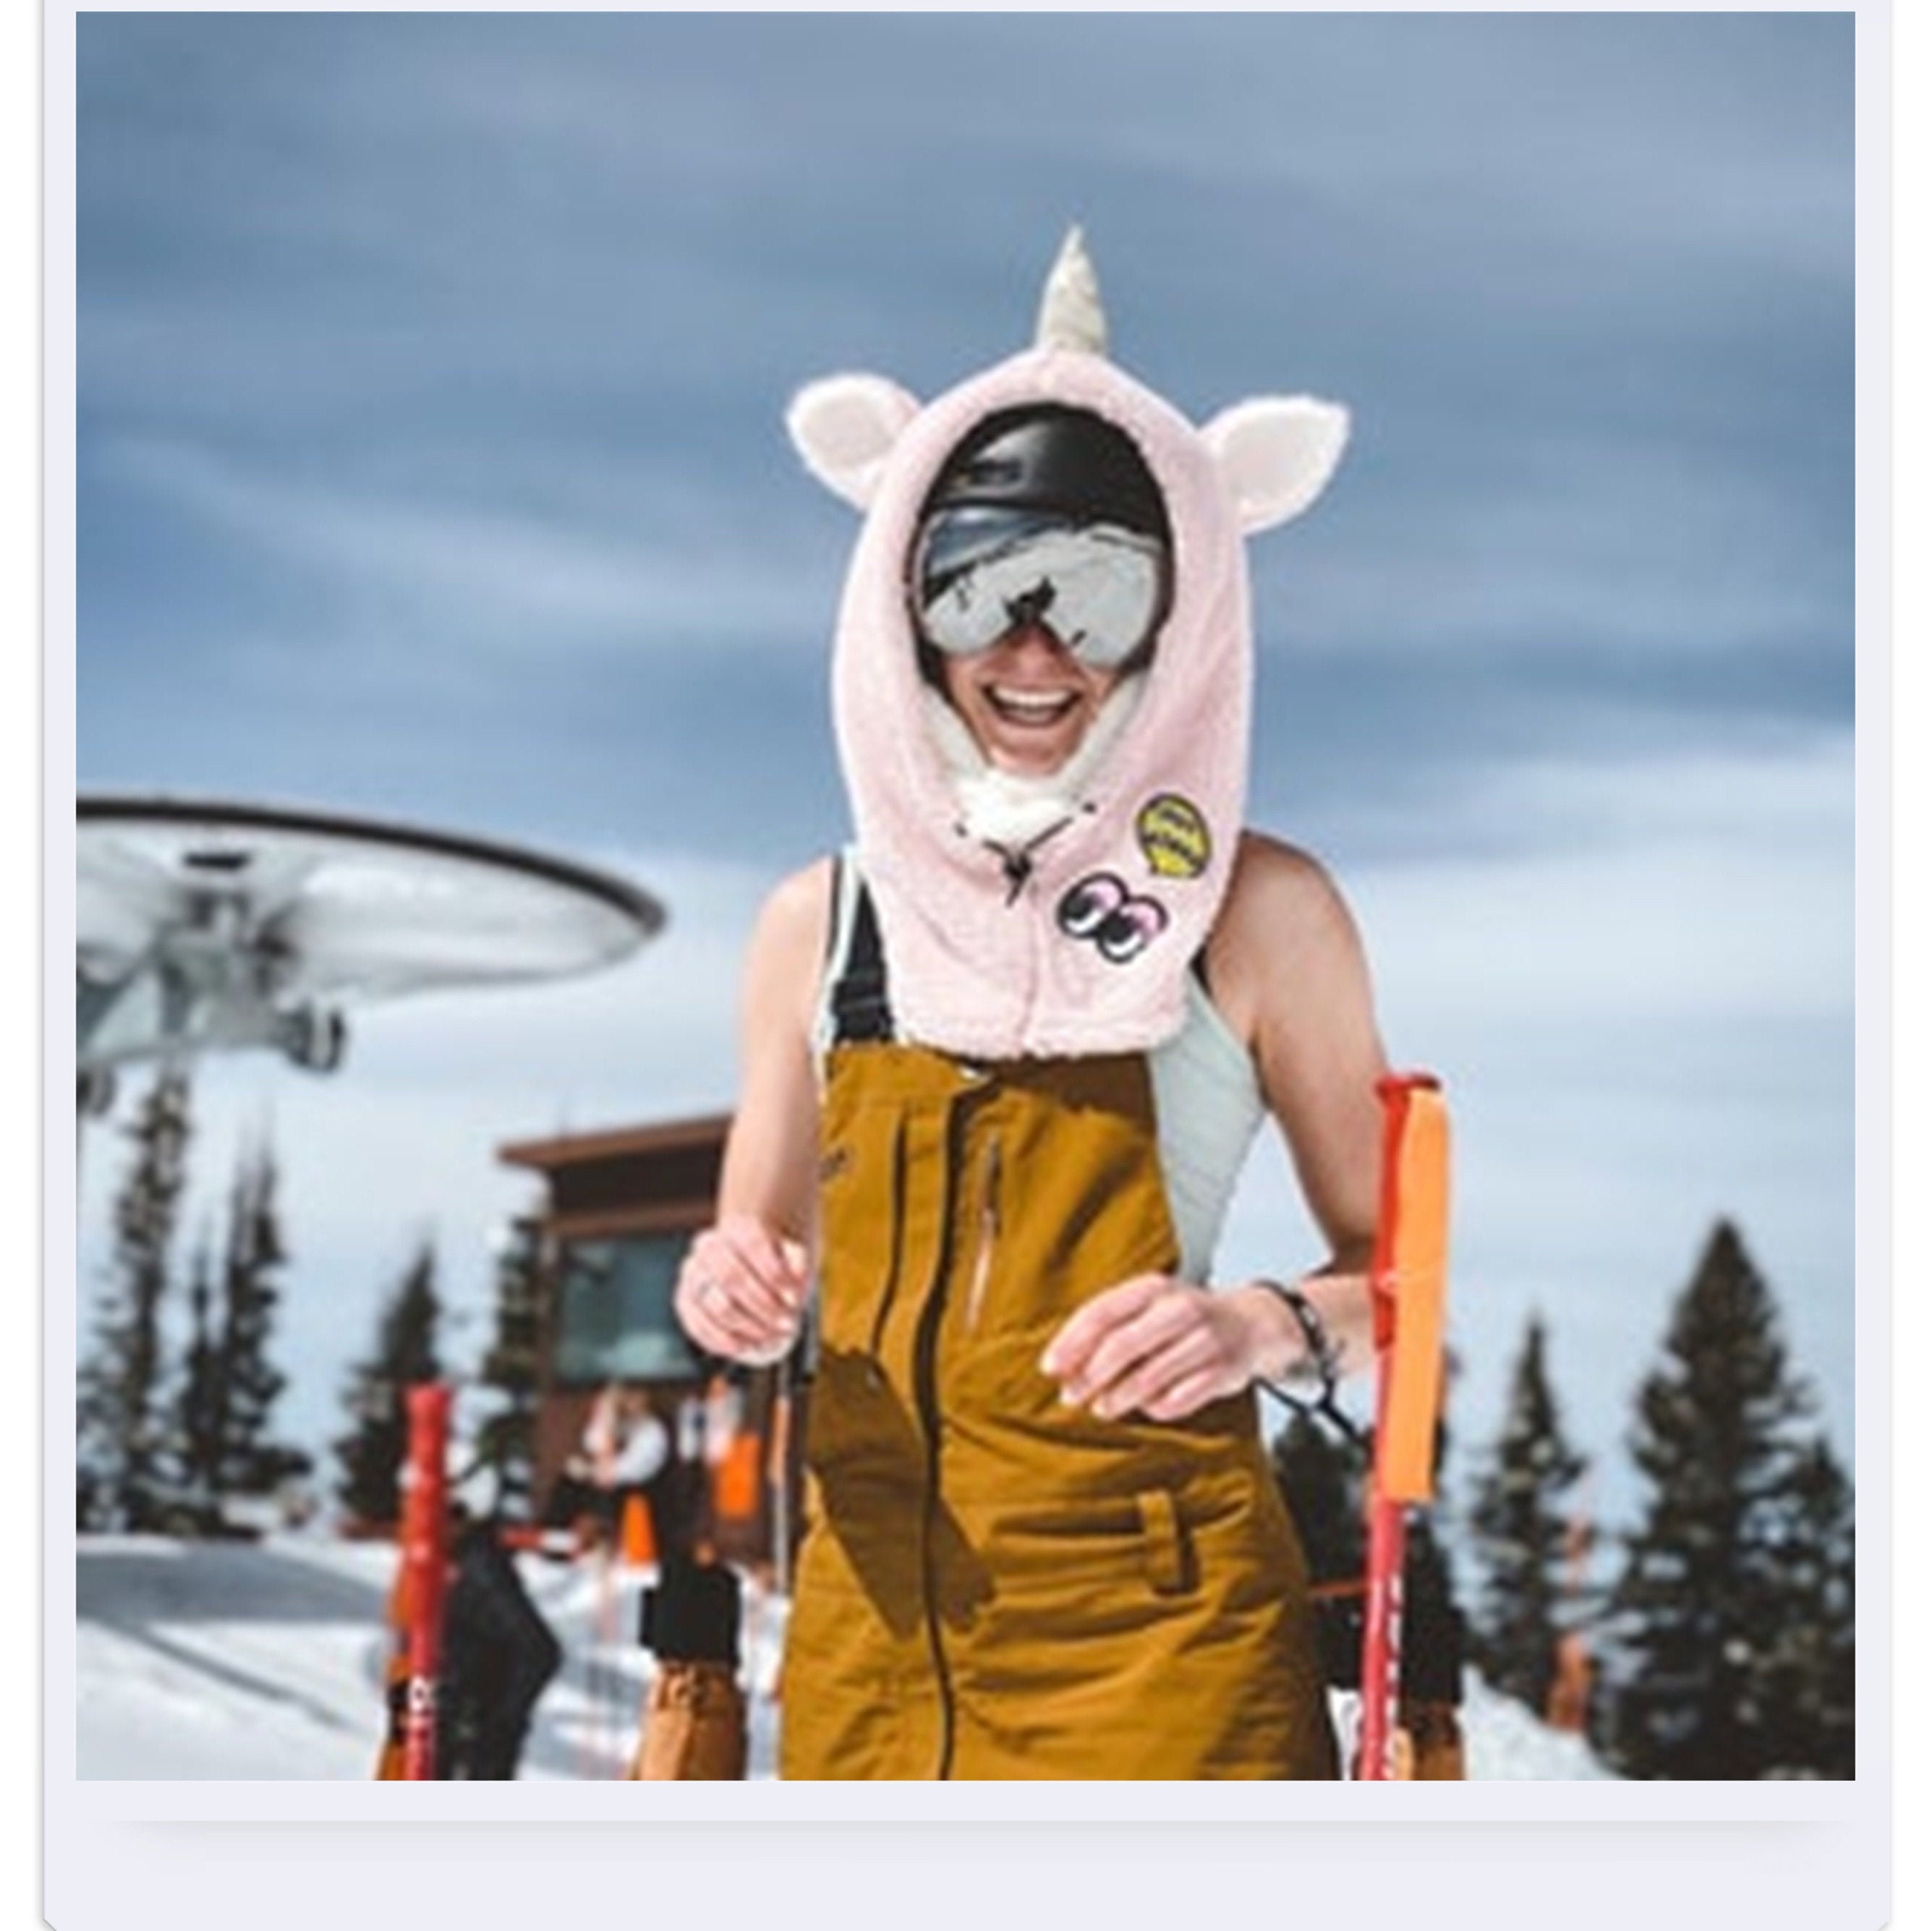 Cagoule de ski animals - NetKulture